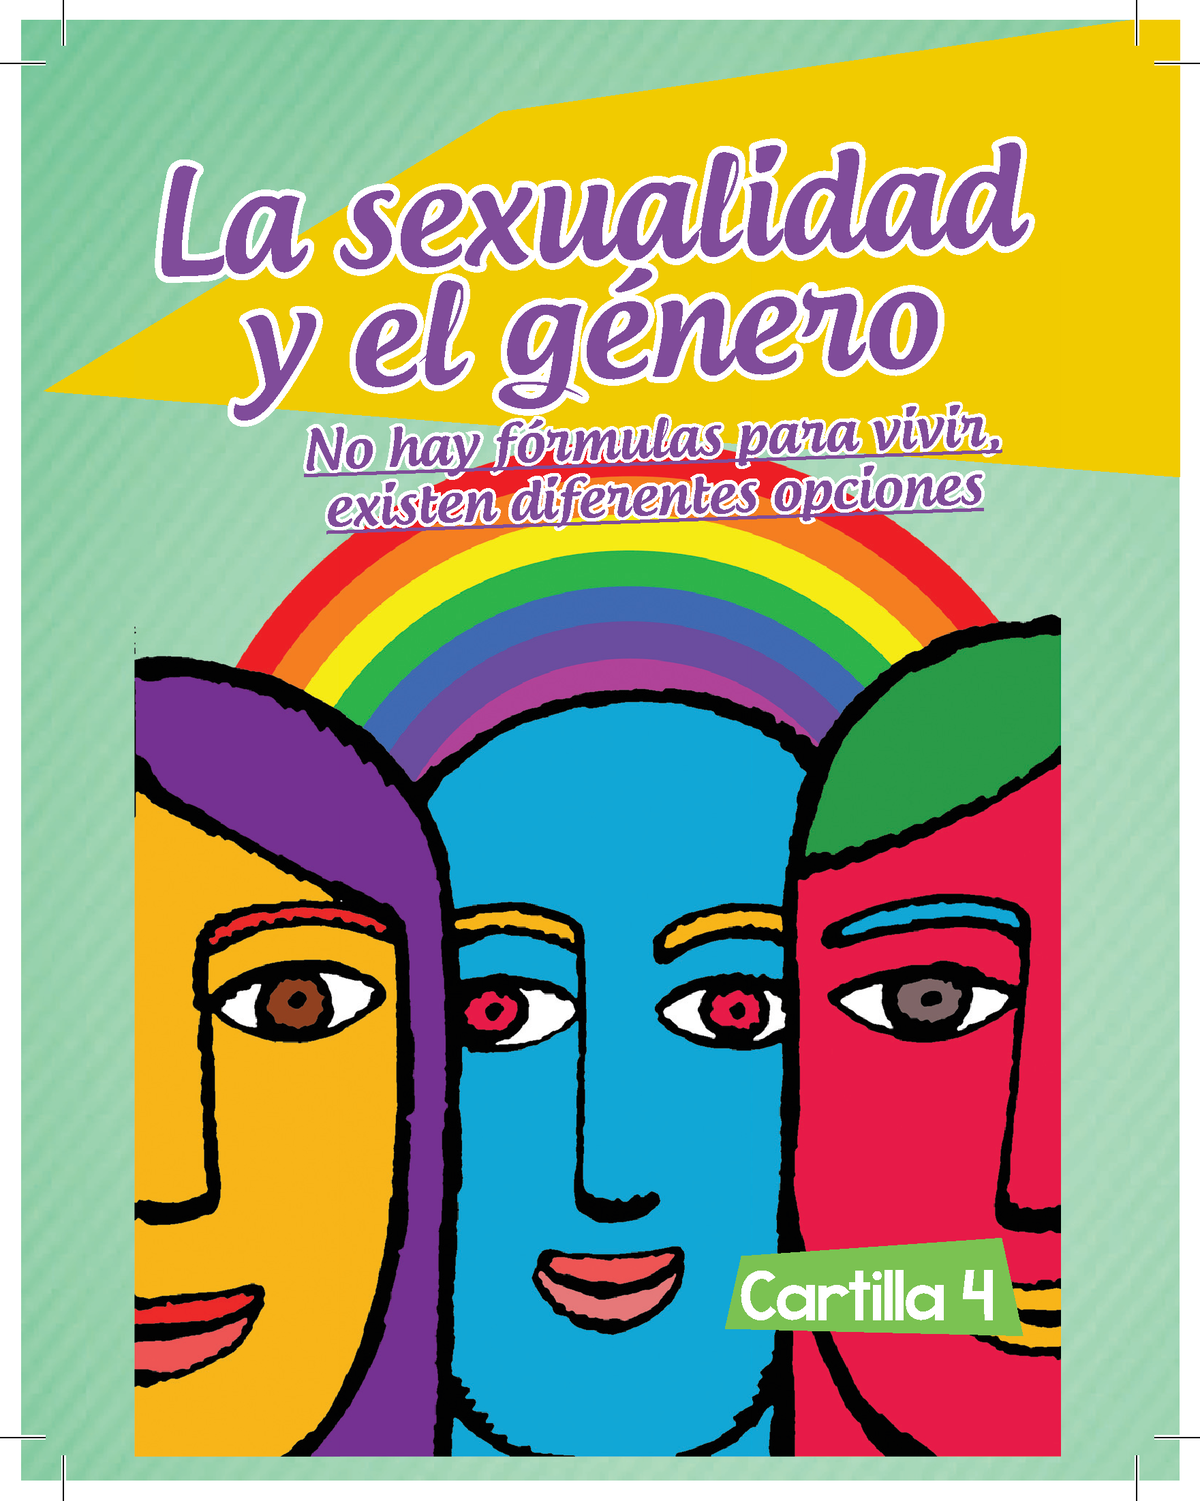 C4 La Sexualidad Y El Genero La Sexualidad Y El Género La Sexualidad Y El Género Cartilla 4 No 6312